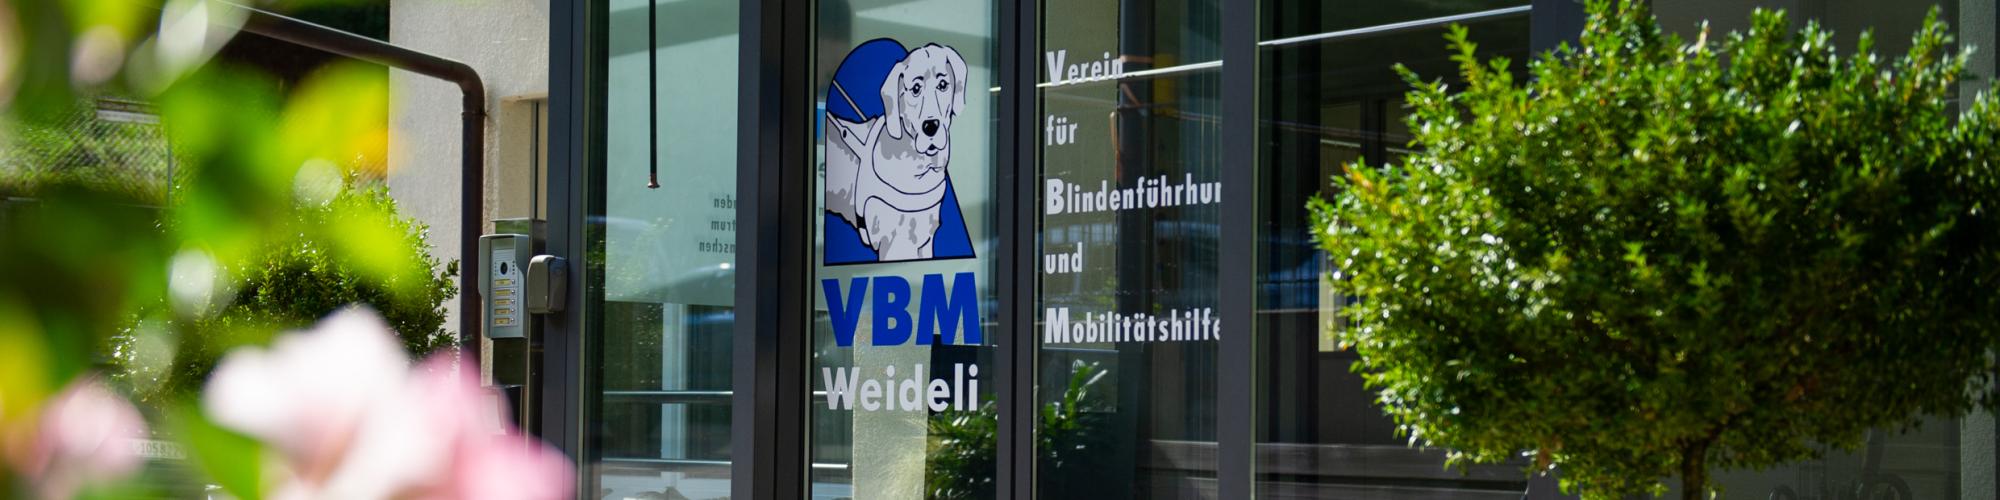 Blindenhundeschule Liestal - VBM